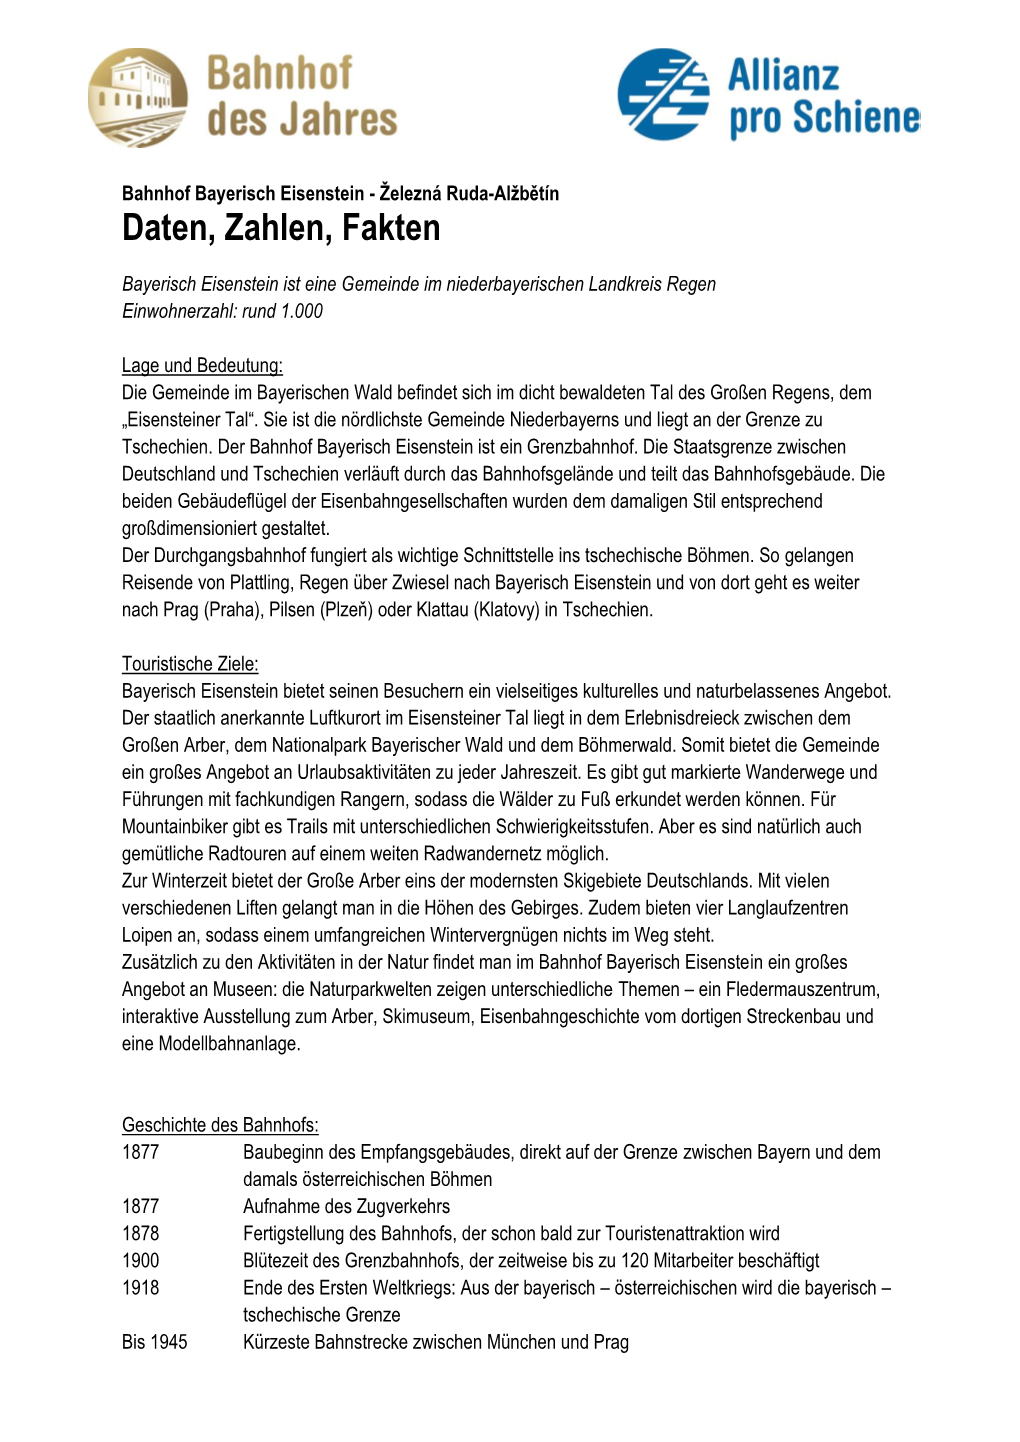 Daten & Fakten Zum Bahnhof Bayerisch Eisenstein